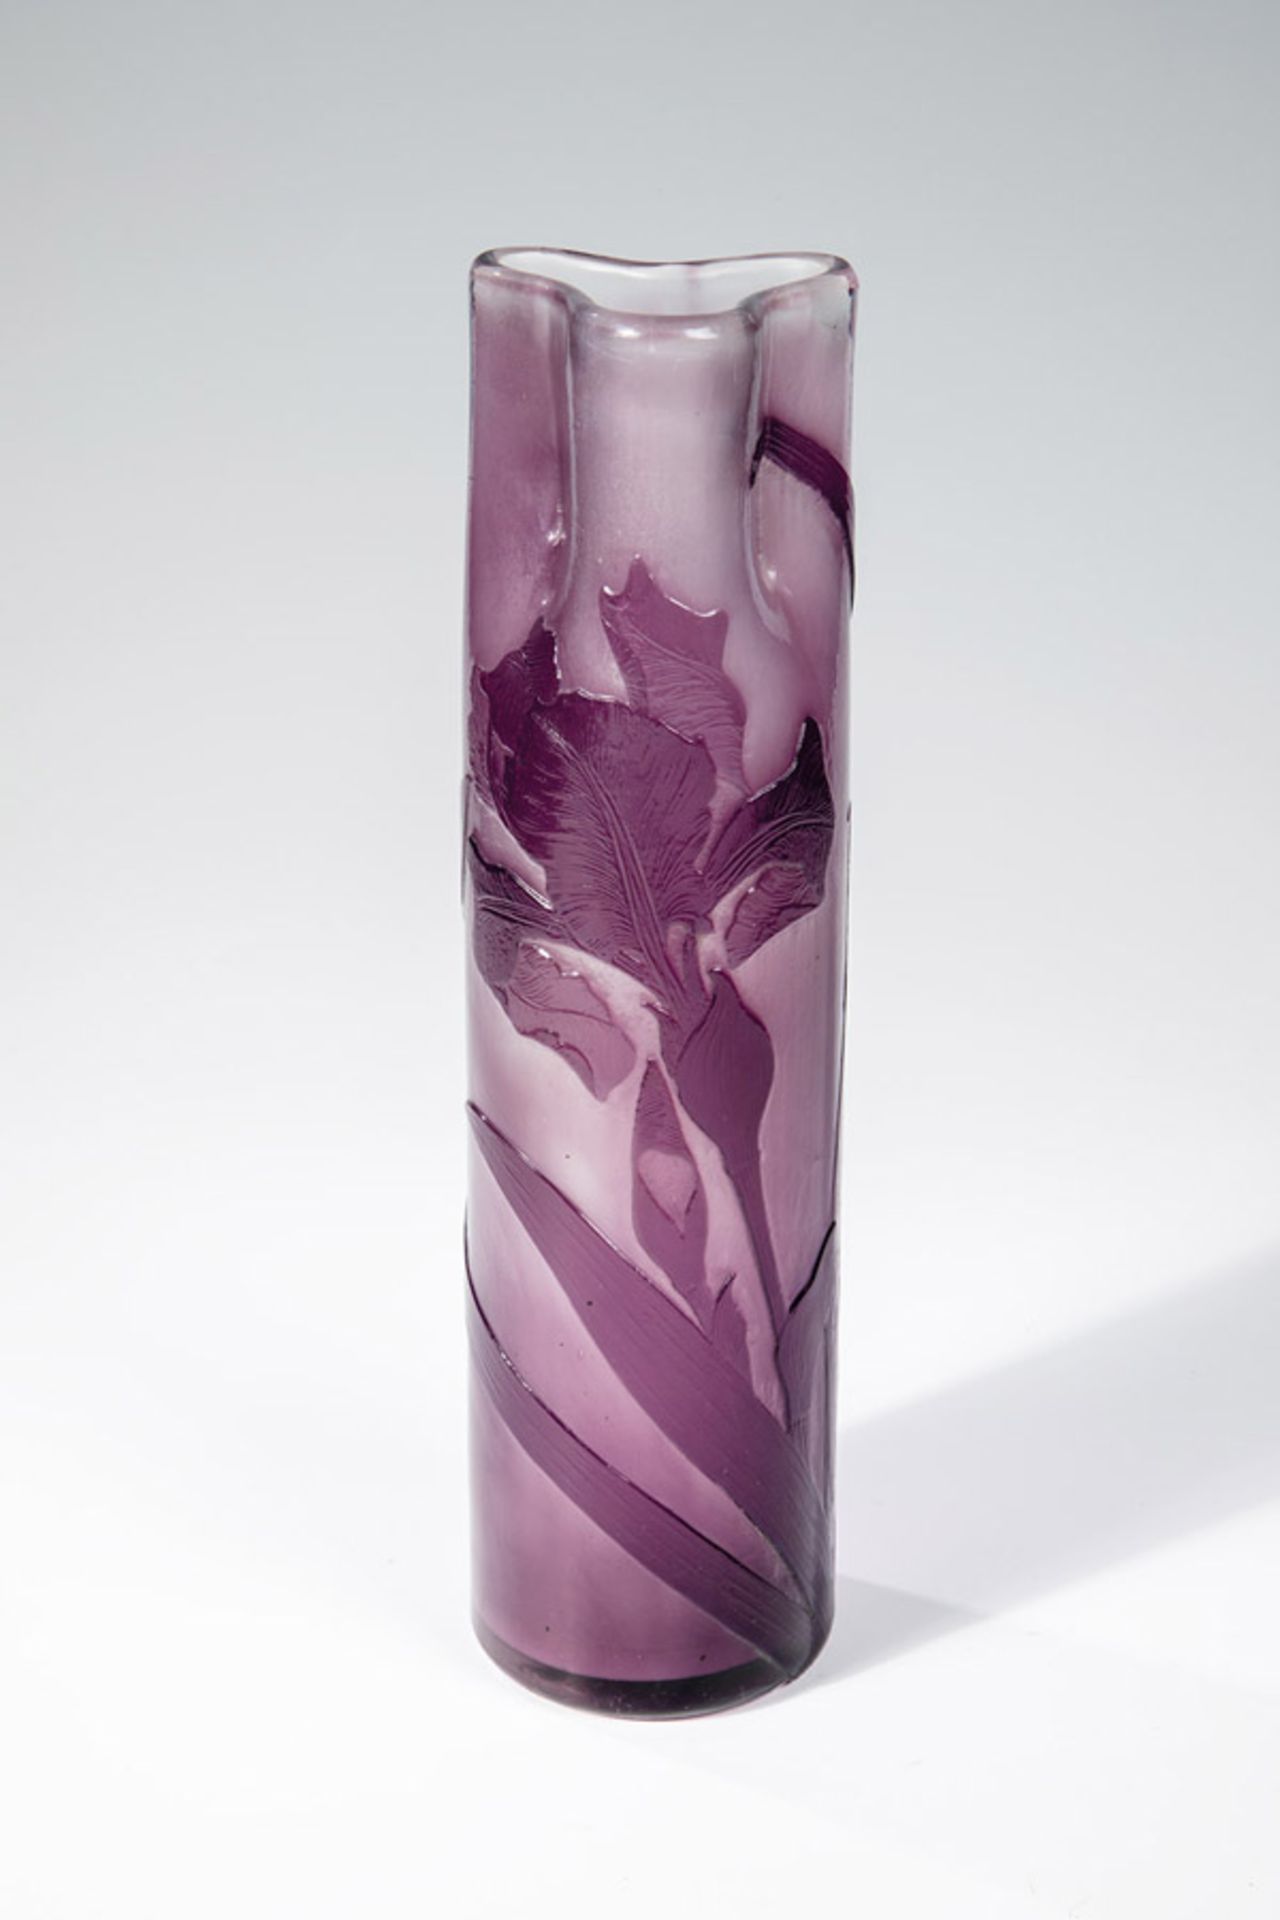 Stangenvase mit IrisEmile Gallé, Nancy, um 1895 Farbloses, innen säuremattiertes Glas, violett